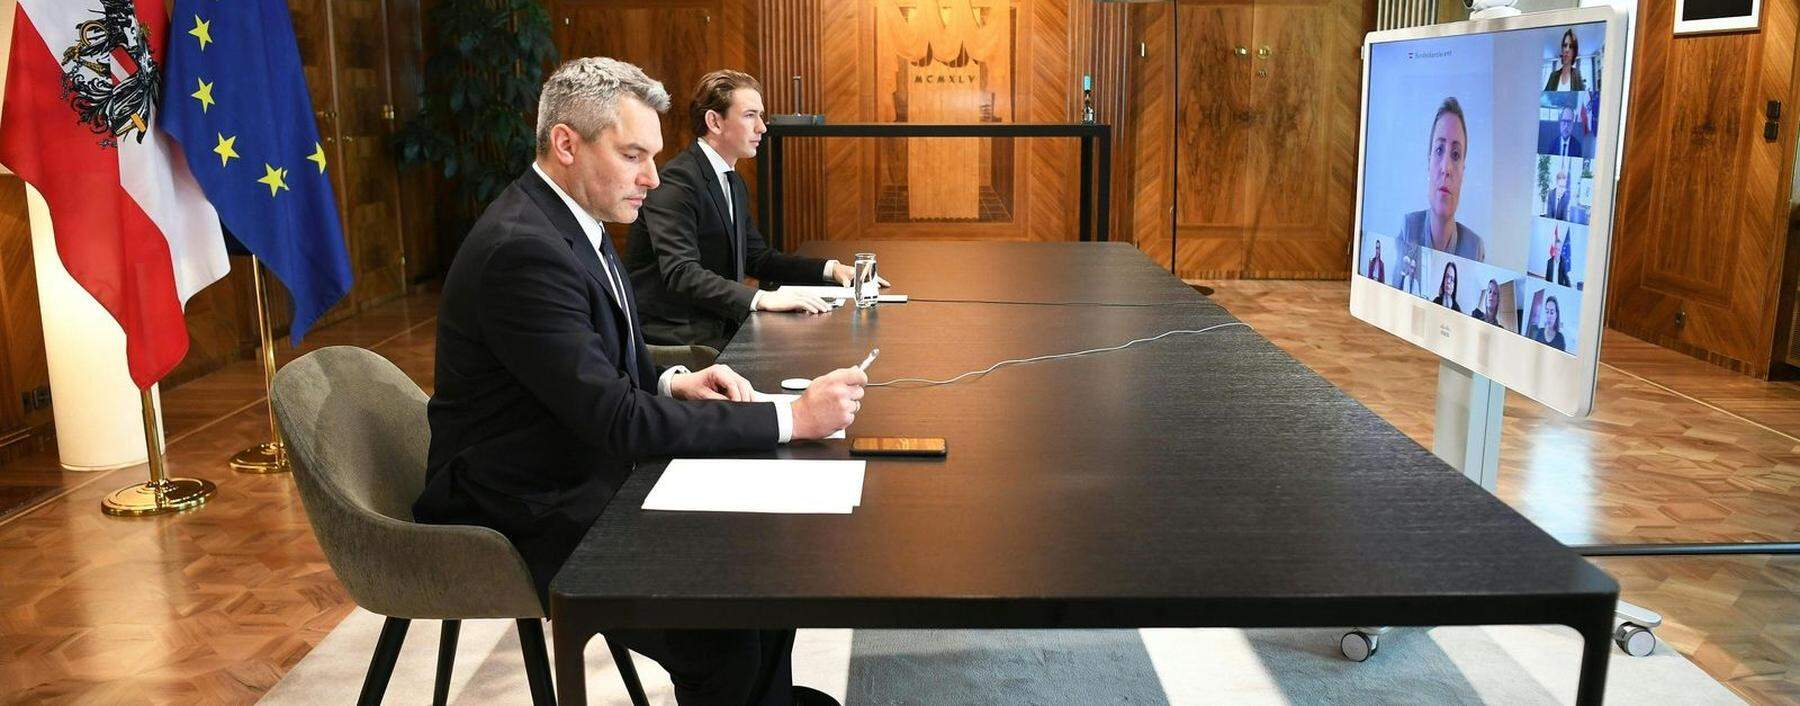 Innenminister Karl Nehammer und Bundeskanzler Sebastian Kurz (beide ÖVP) bei einer Videokonferenz nach dem Terroranschlag.